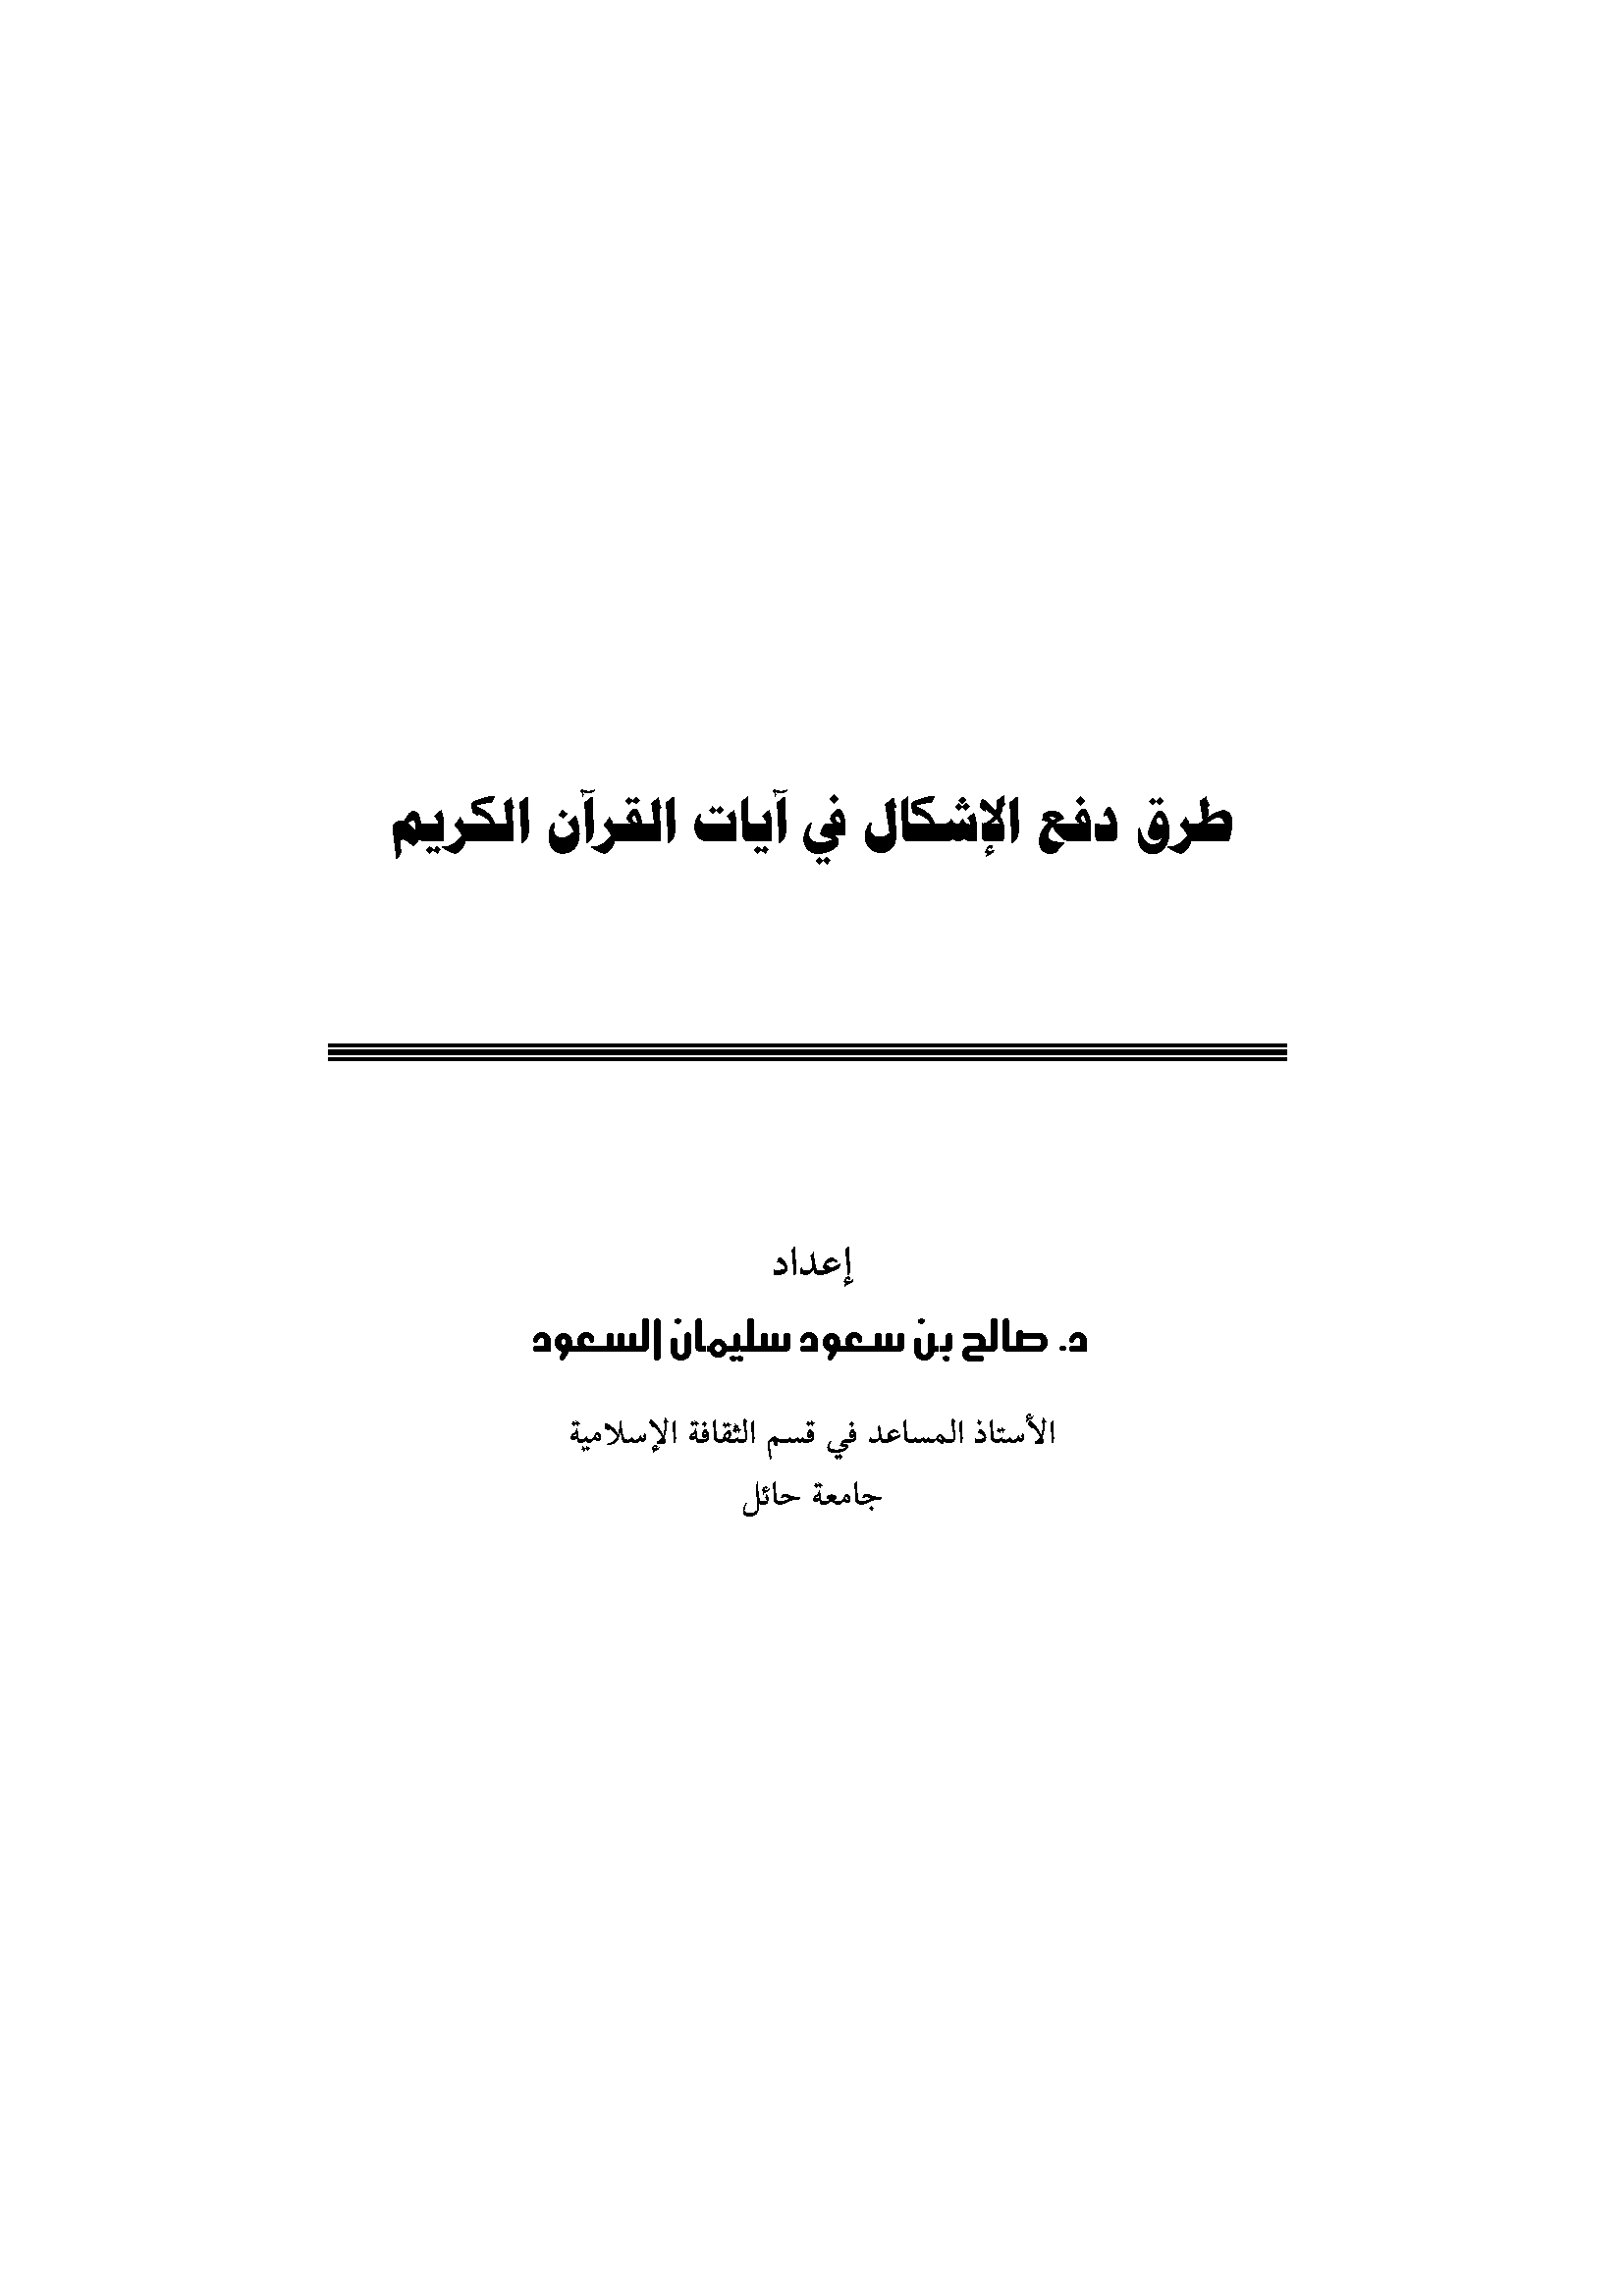 تحميل كتاب طرق دفع الإشكال في آيات القرآن الكريم للمؤلف: الدكتور صالح بن سعود سليمان السعود